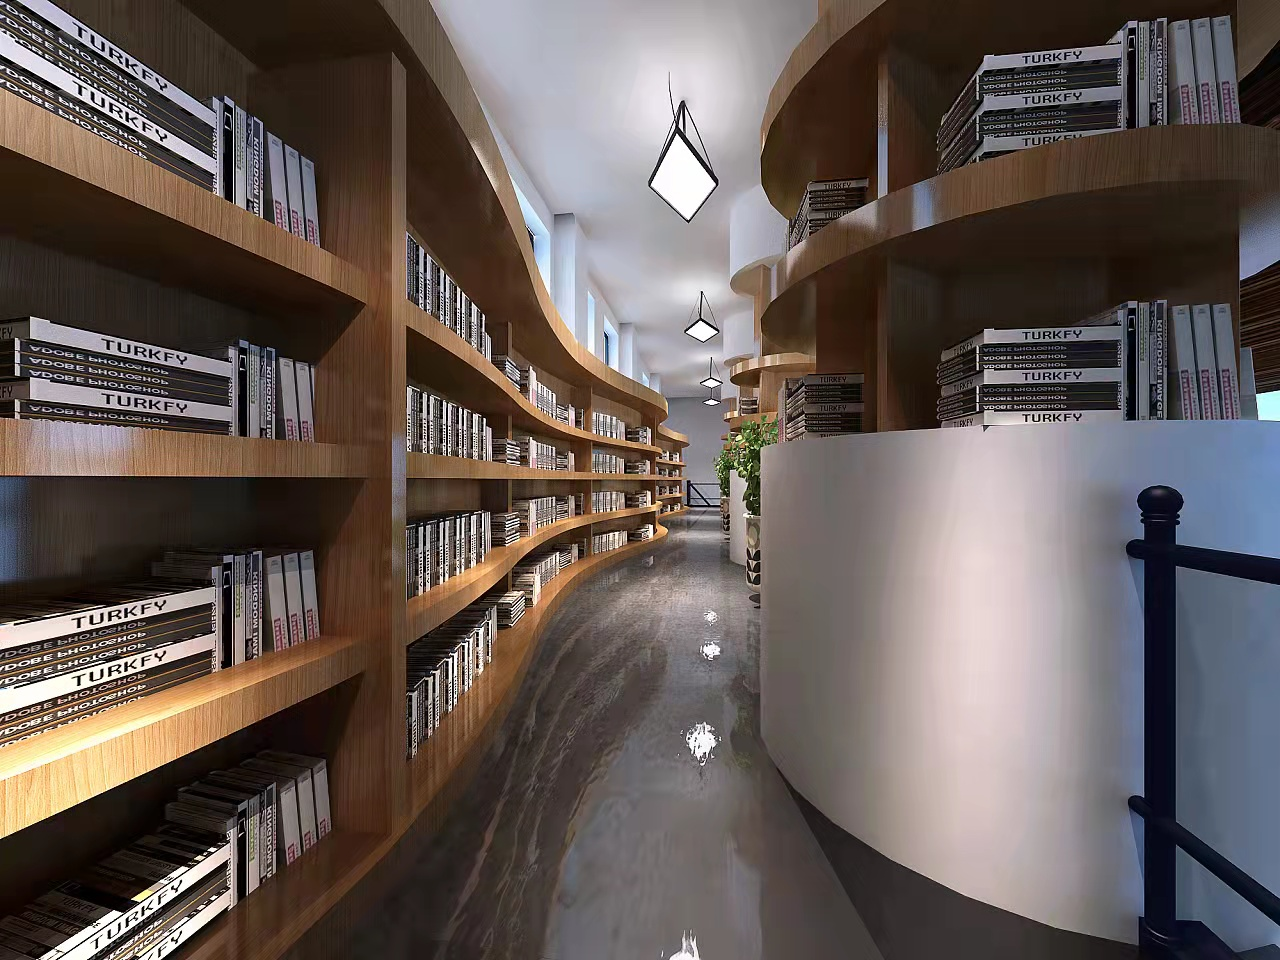 Návrh osvětlení knihovny, klíčová oblast osvětlení školy!